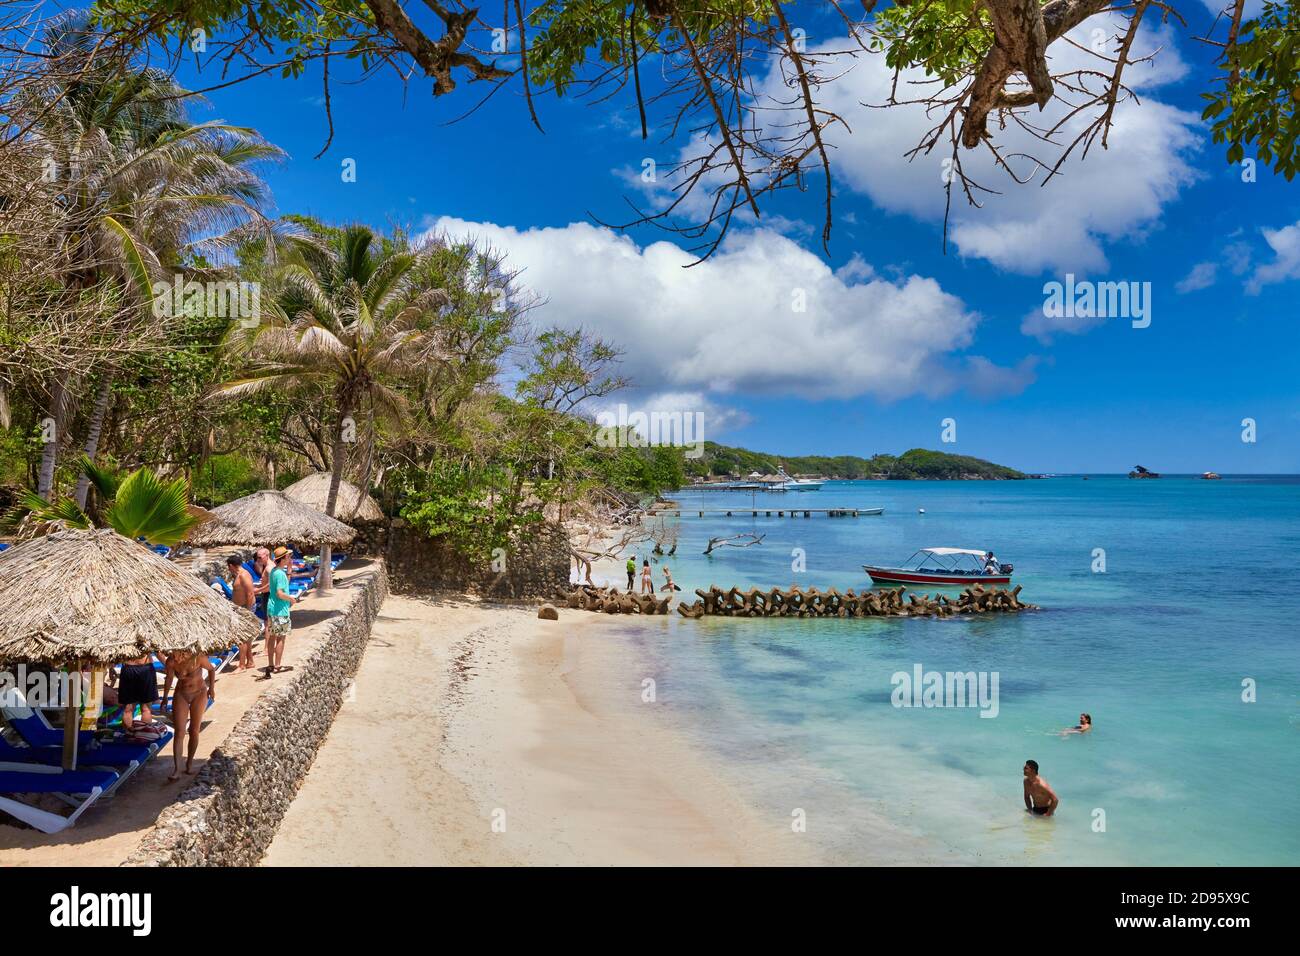 La playa del Mar Caribe, la Isla Grande, Islas del Rosario, Cartagena de Indias, Bolívar, Colombia, Sur America Foto de stock